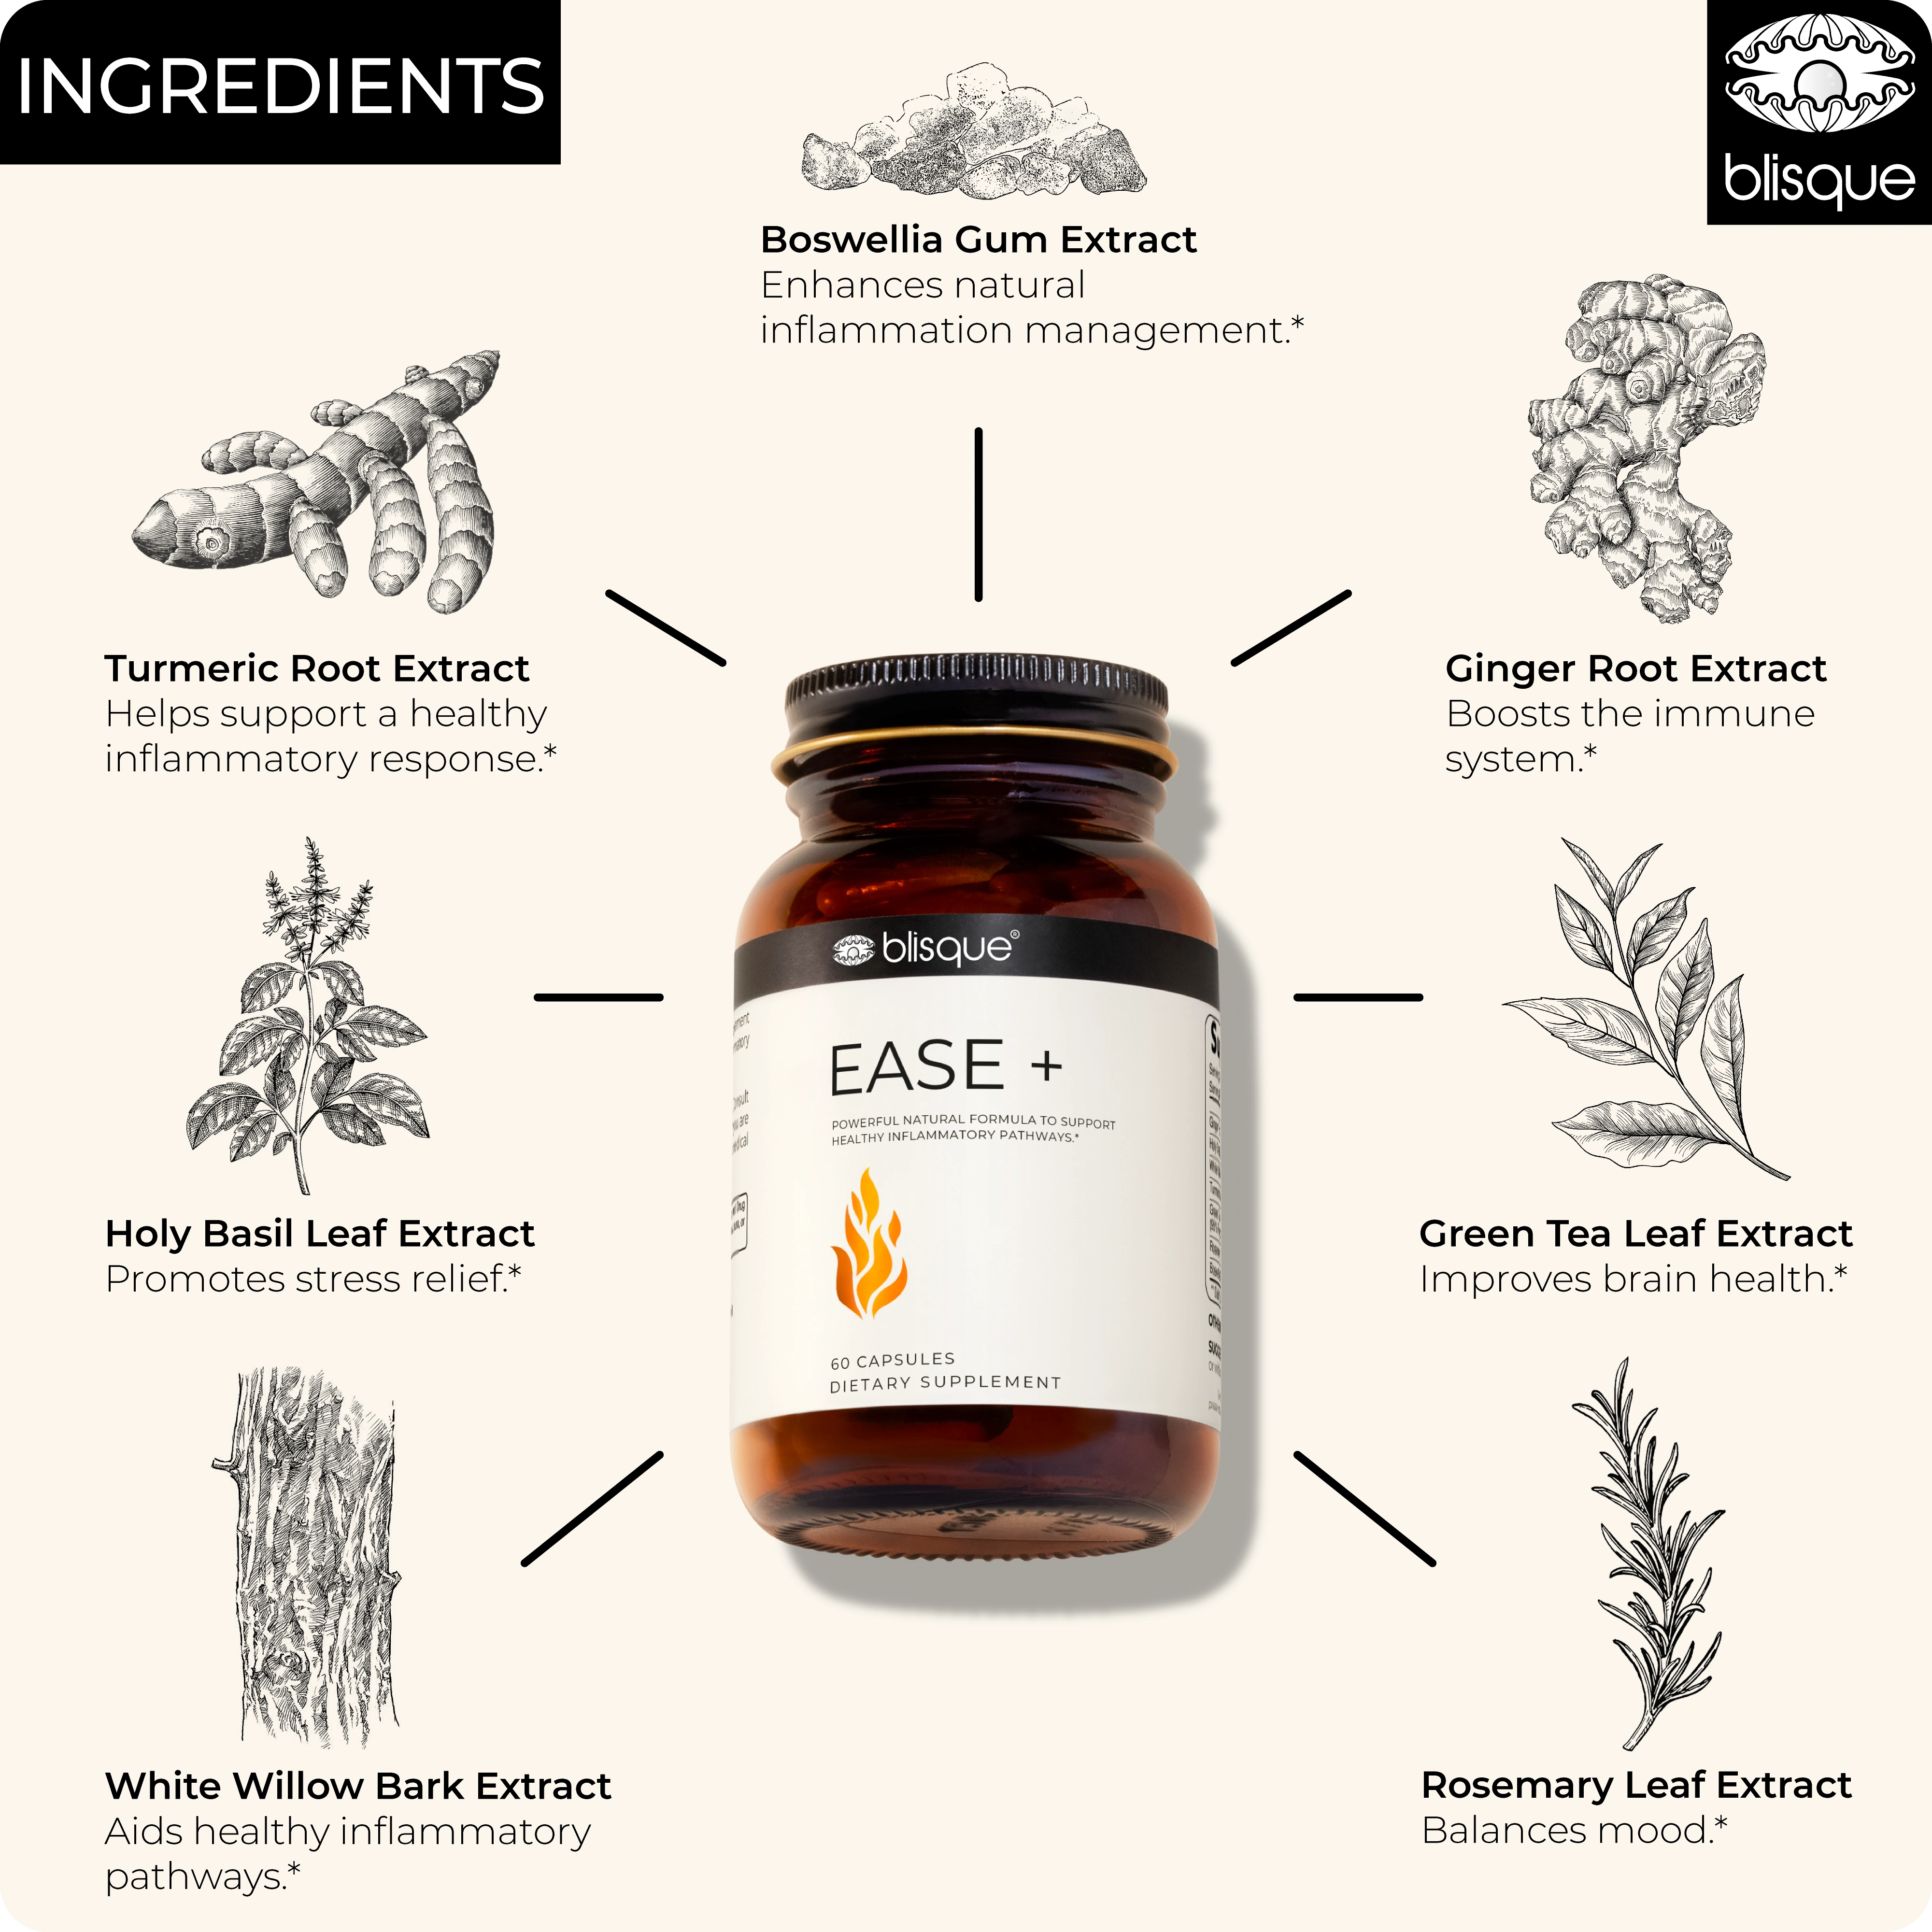 EASE + ingredients